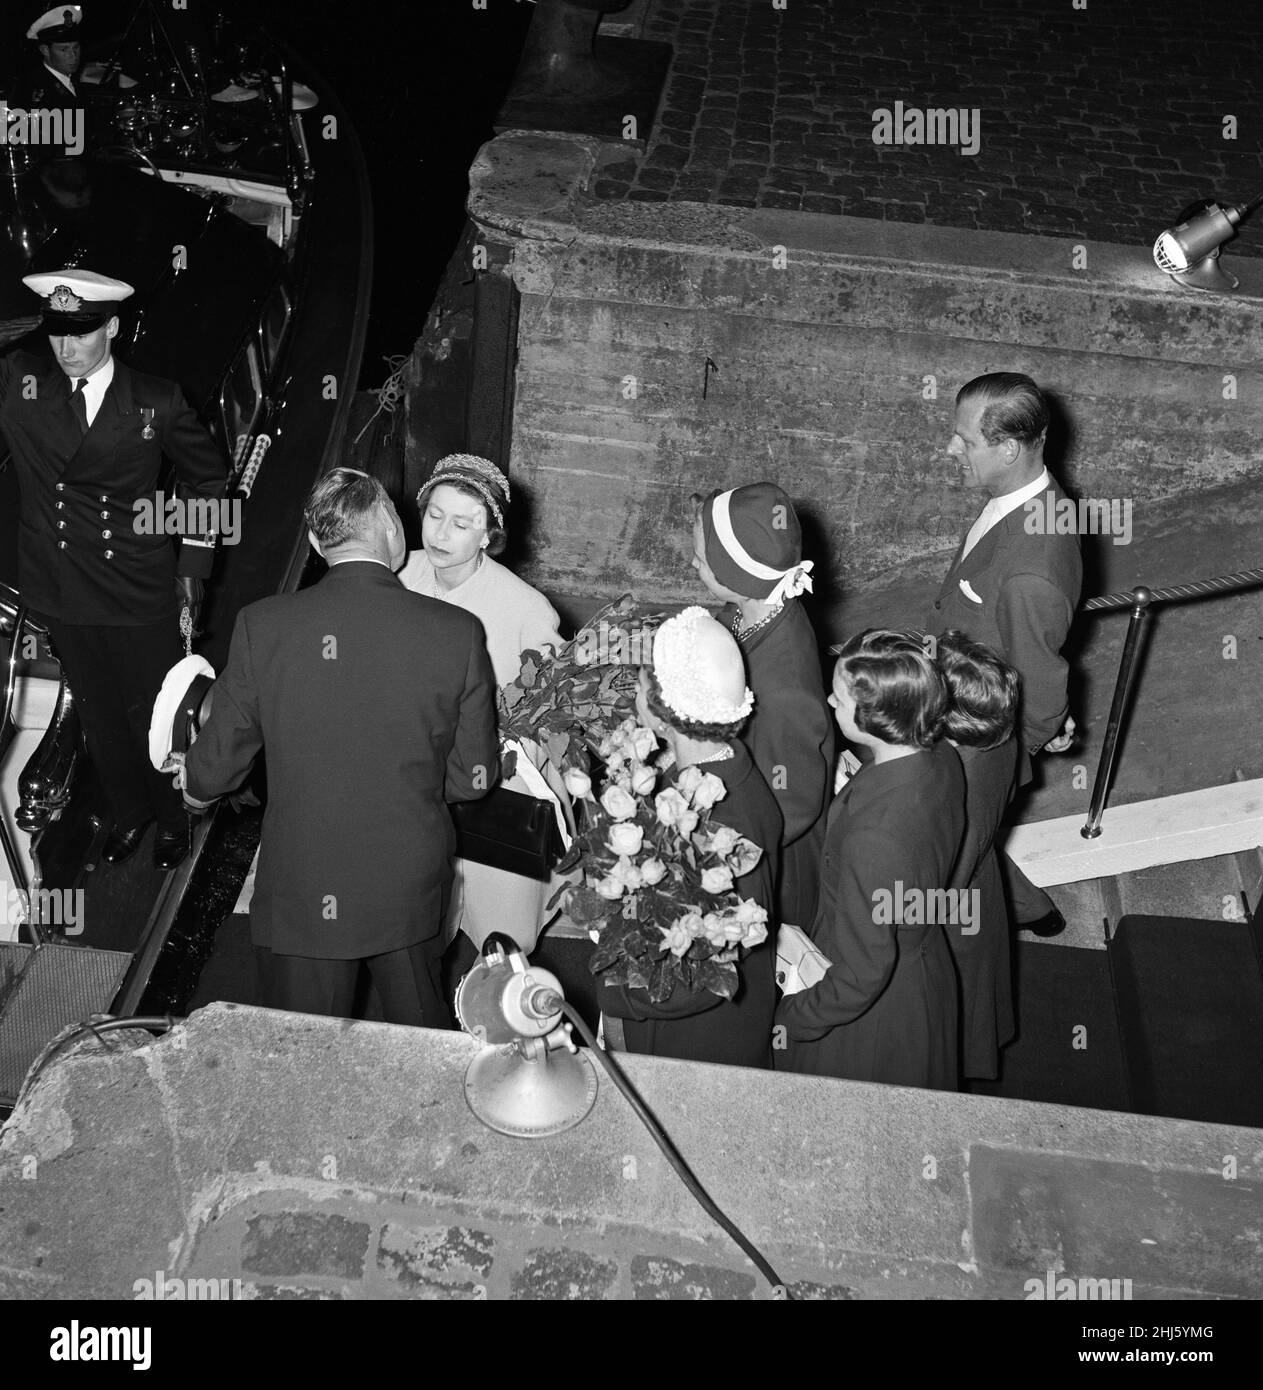 La reine Elizabeth II et le prince Philip, duc d'Édimbourg, ont mis fin à leur visite d'État au Danemark.Ils ont fait leurs adieux à Helsingor.La reine Elizabeth II dit Au revoir au roi Frederik.Derrière eux se trouvent la reine Ingrid (sous un chapeau blanc), la princesse Margrethe (portant également un chapeau), la princesse Benedikte, la princesse Anne Marie et le prince Philip.25th mai 1957. Banque D'Images